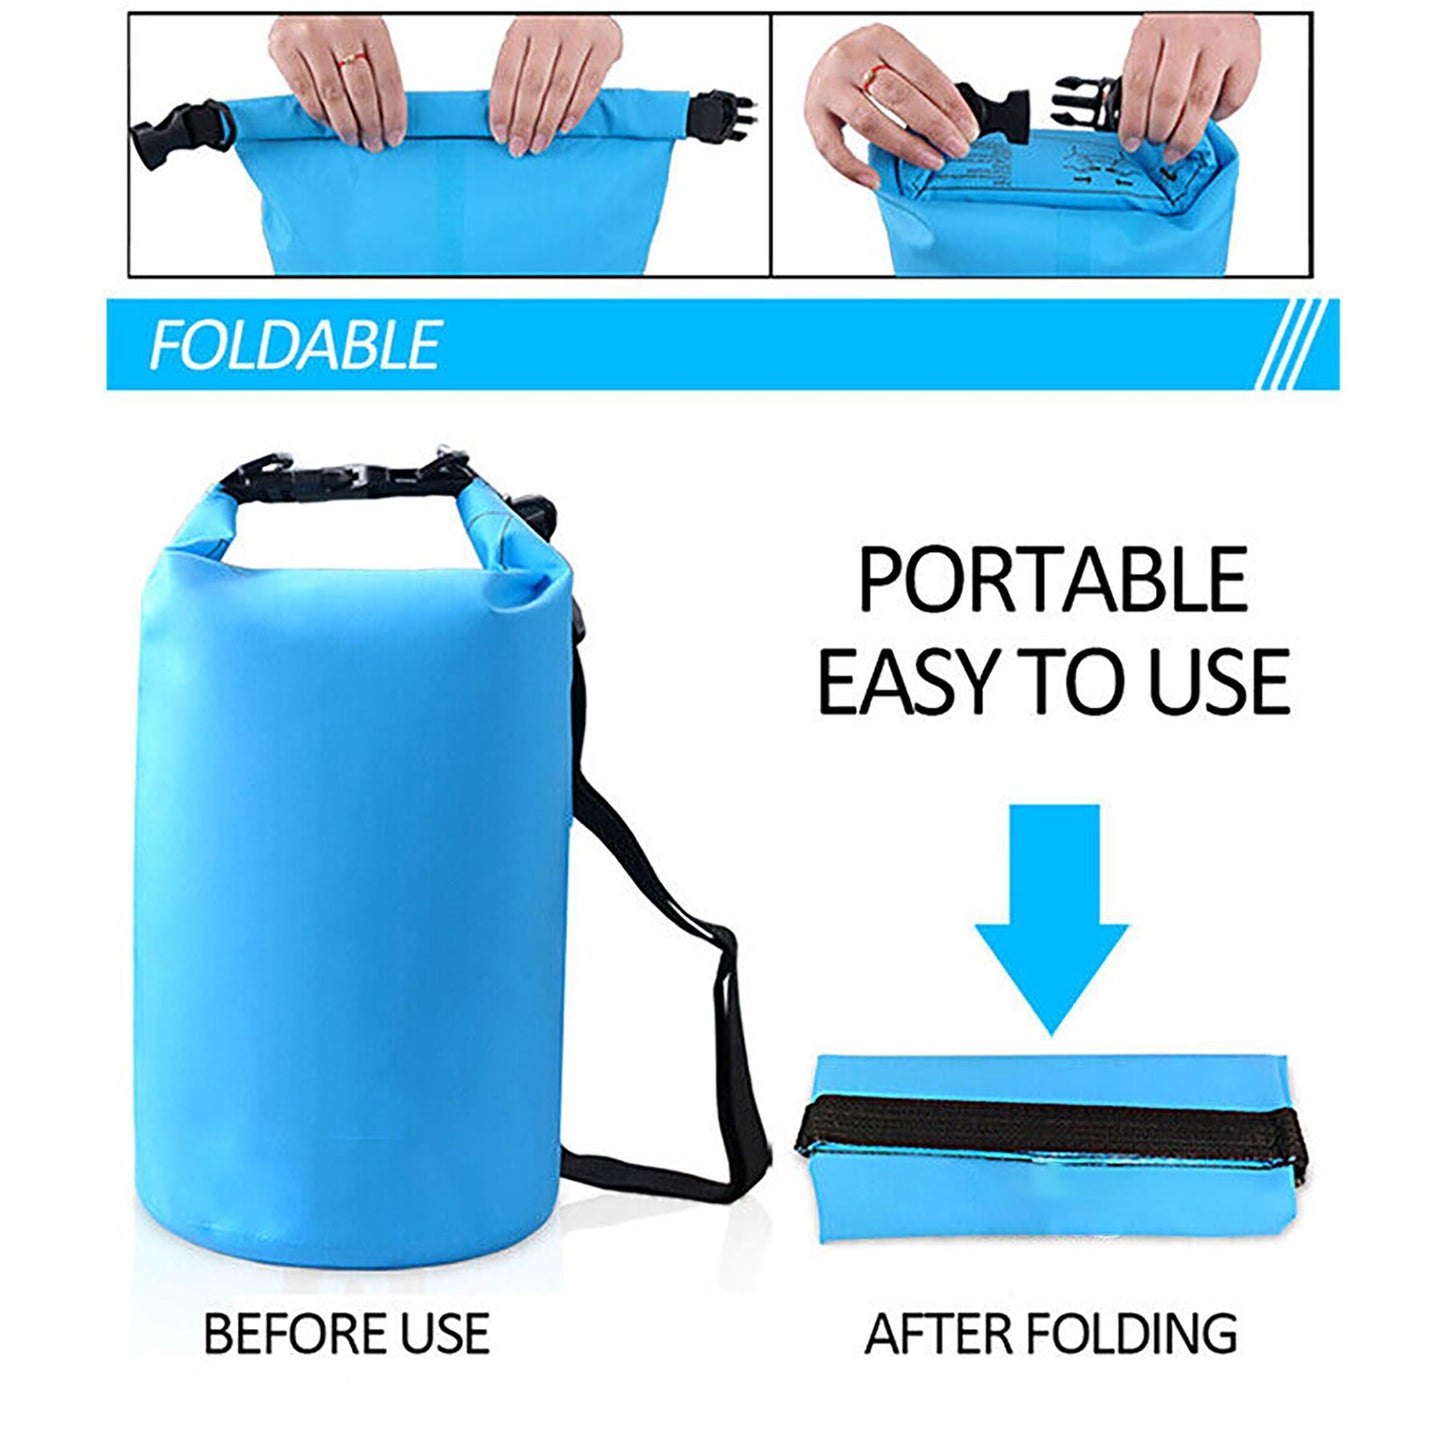 2 L Waterproof Dry Bag by Geezy - UKBuyZone